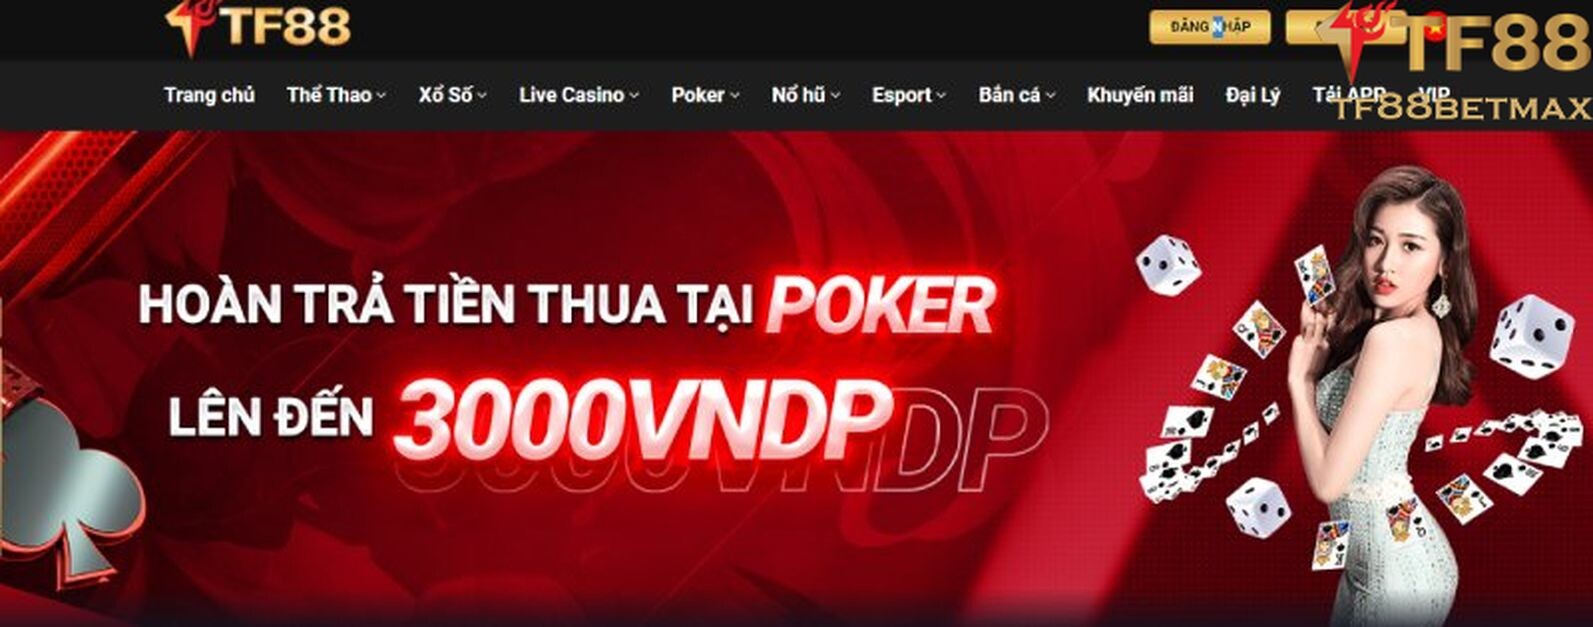 Khuyến mãi Poker TF88 hoàn trả lên đến 3000 VNDP